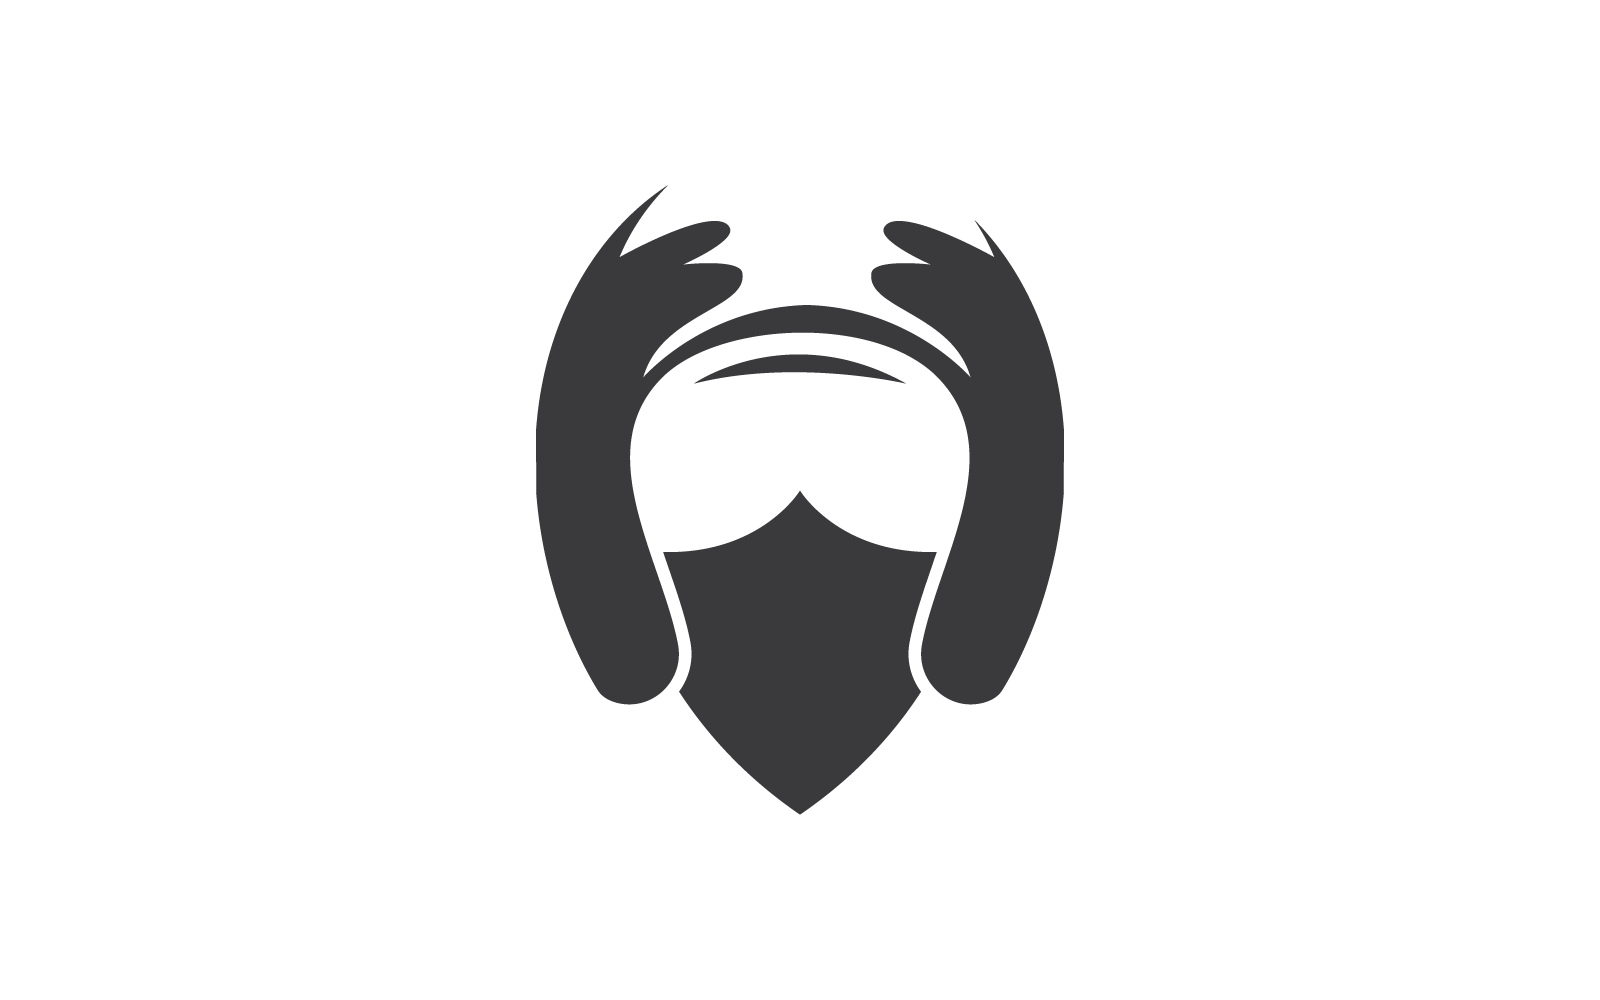 Motorcycle helmet logo icon vector design